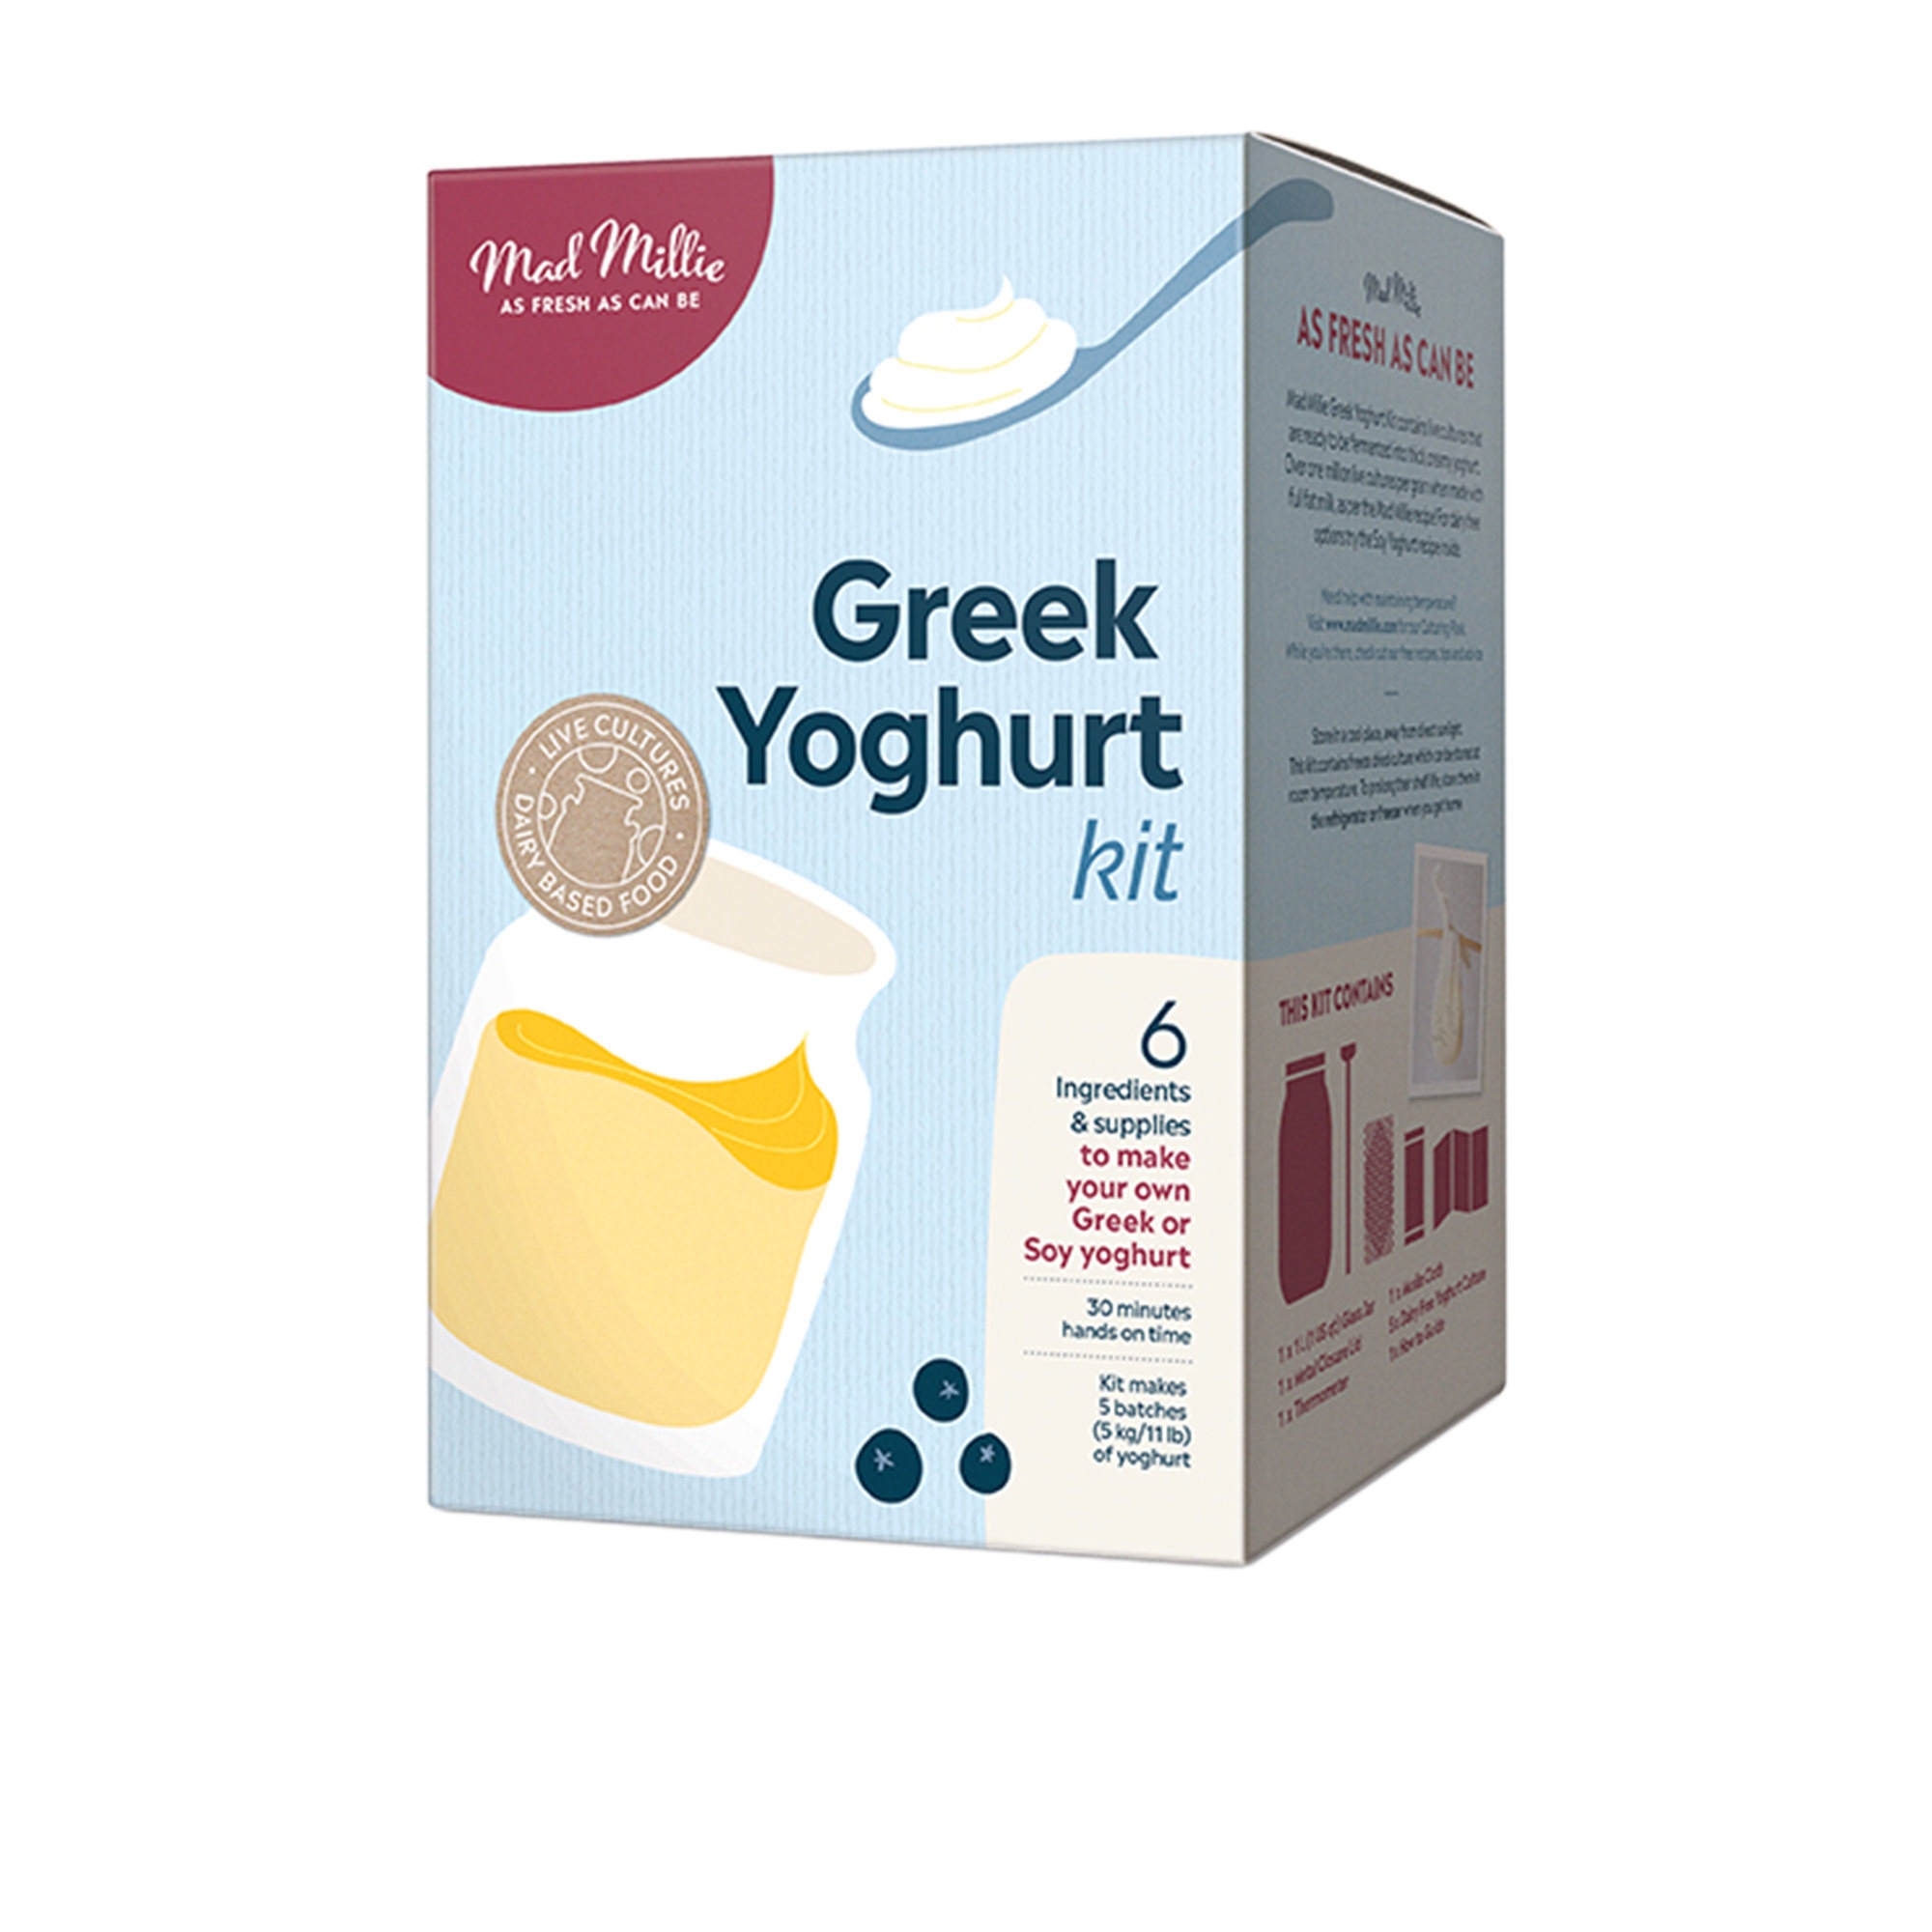 Mad Millie Greek Yoghurt Kit Image 1